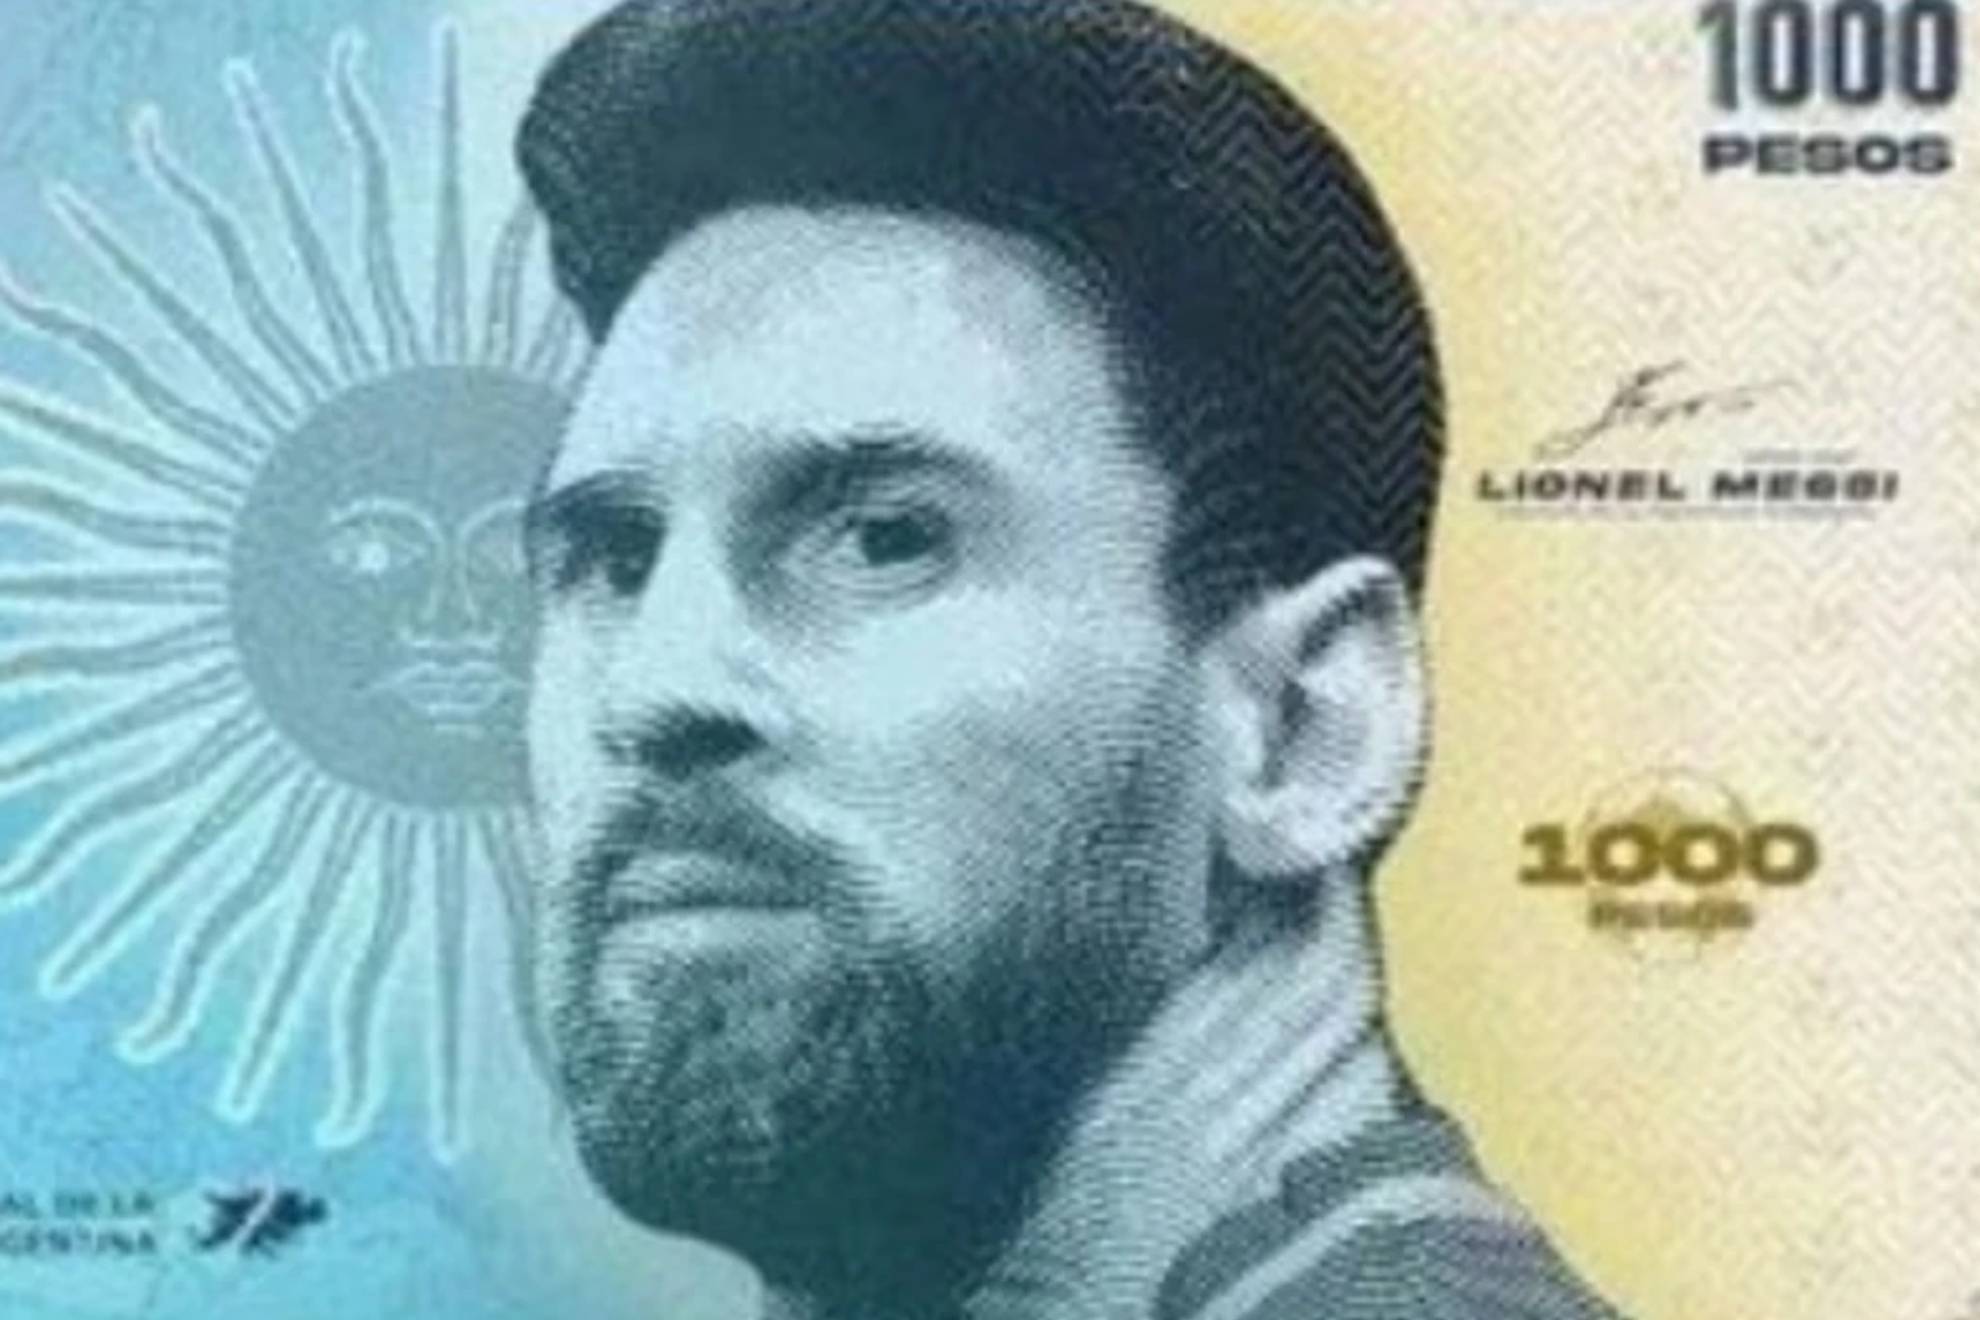 ¡En honor a Messi! Proponen un billete en Argentina para celebrar al campeón mundial